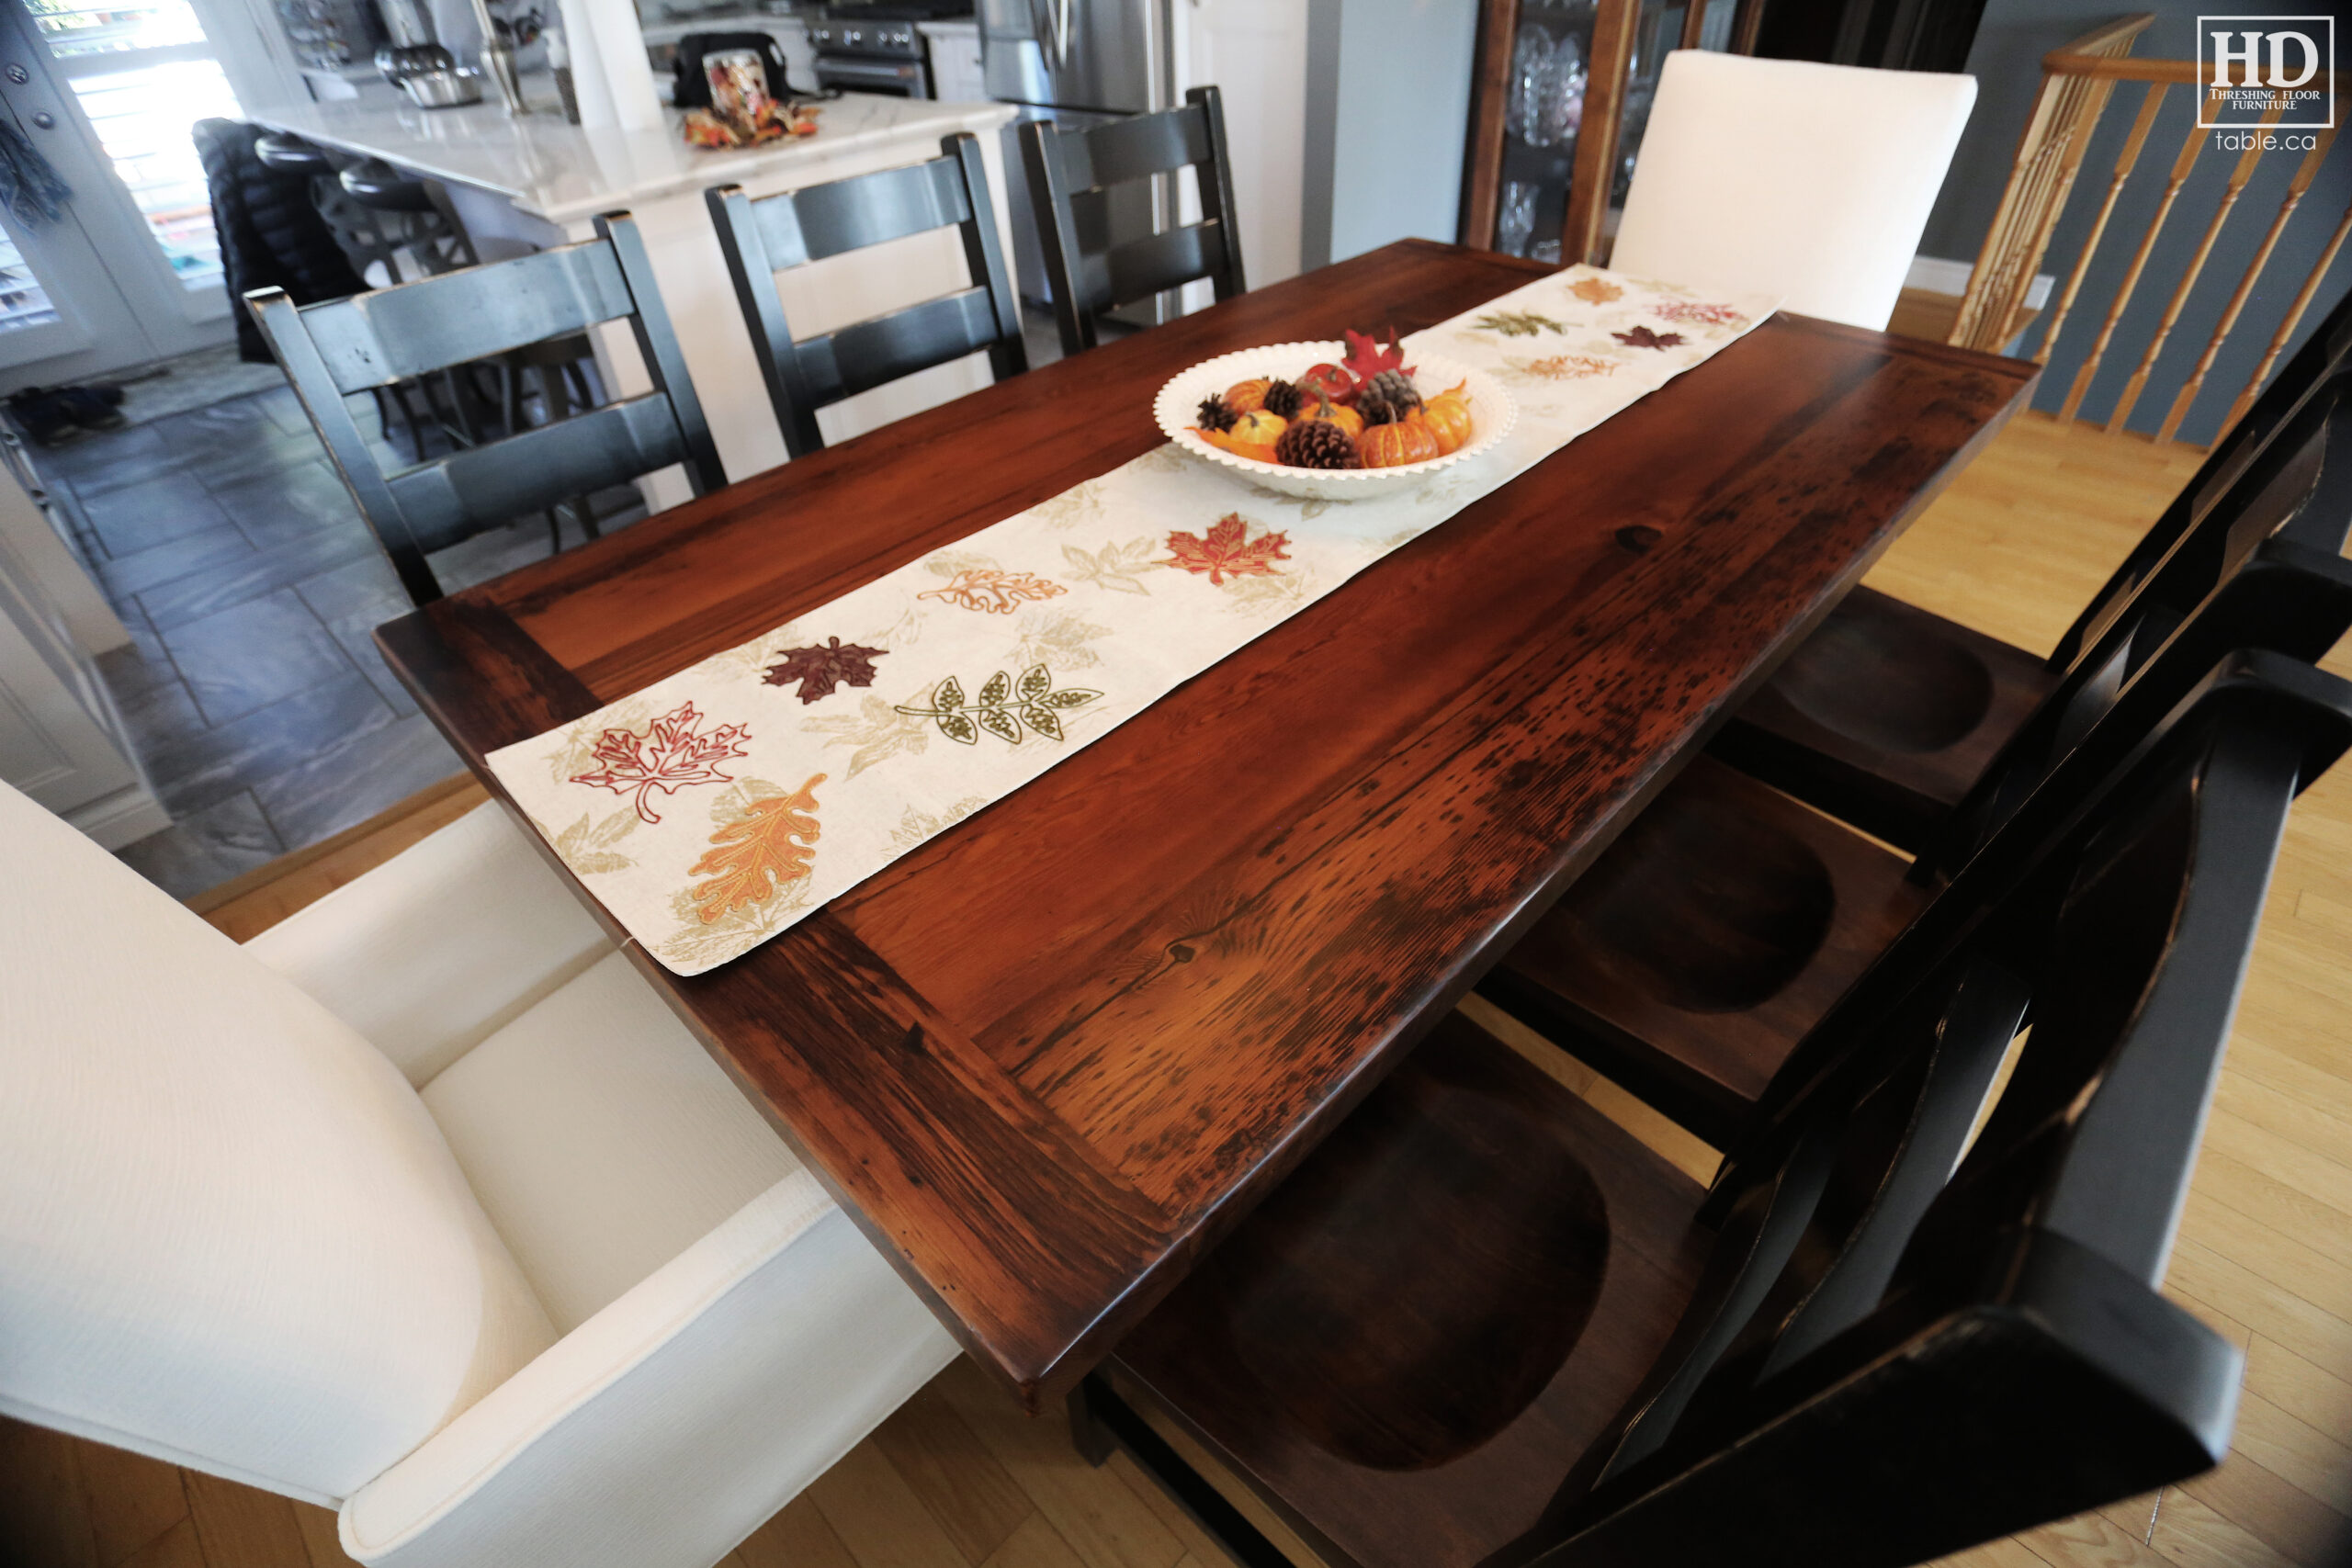 Pioneer Barnwood Table by HD Threshing Floor Furniture / www.table.ca